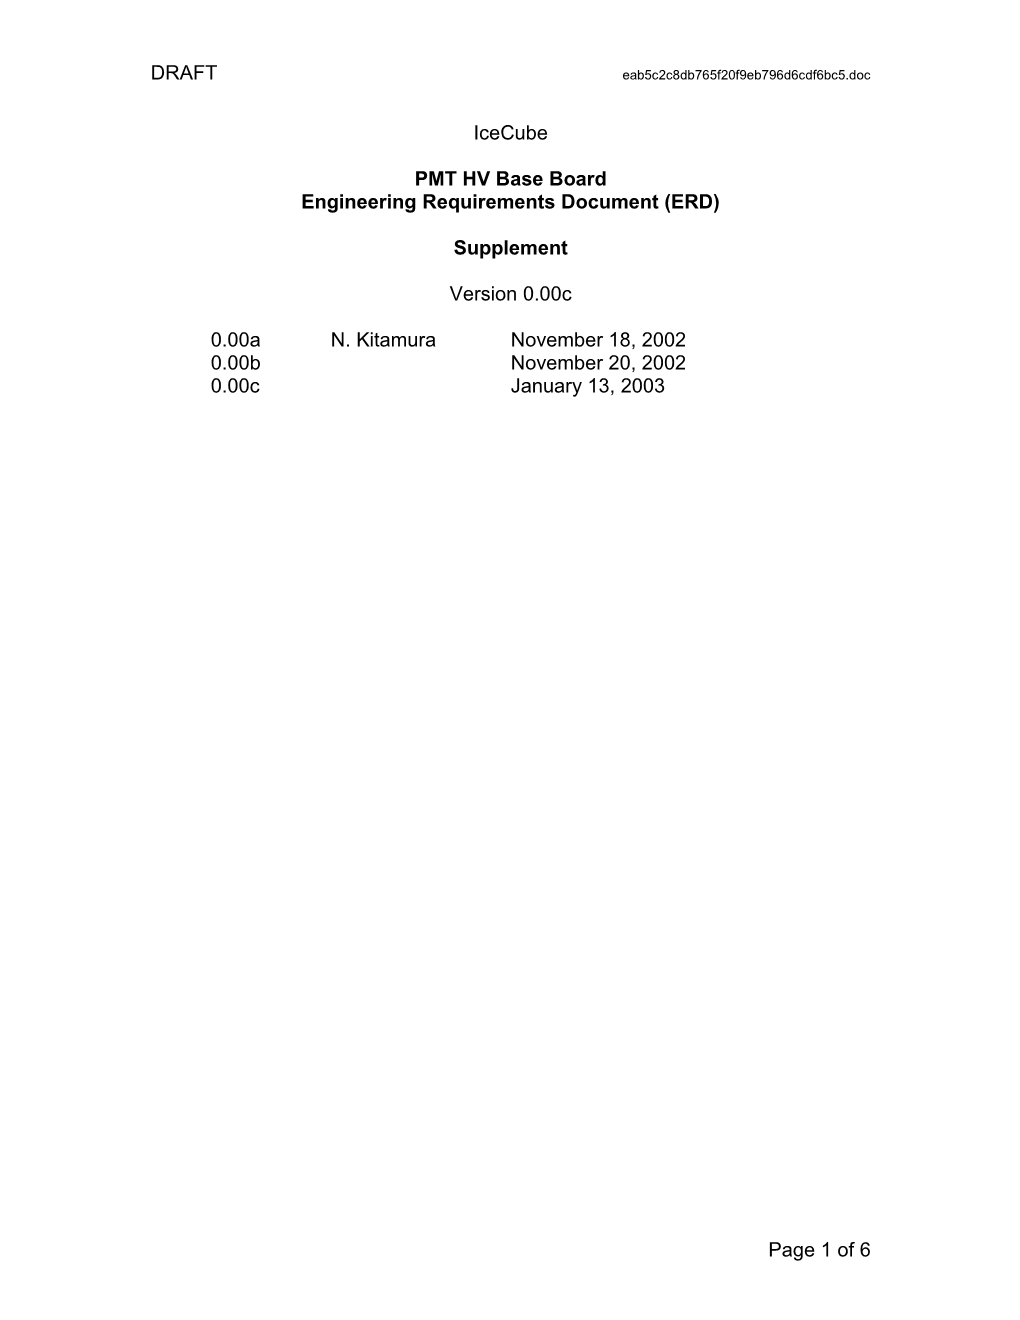 Engineering Requirements Document (ERD)